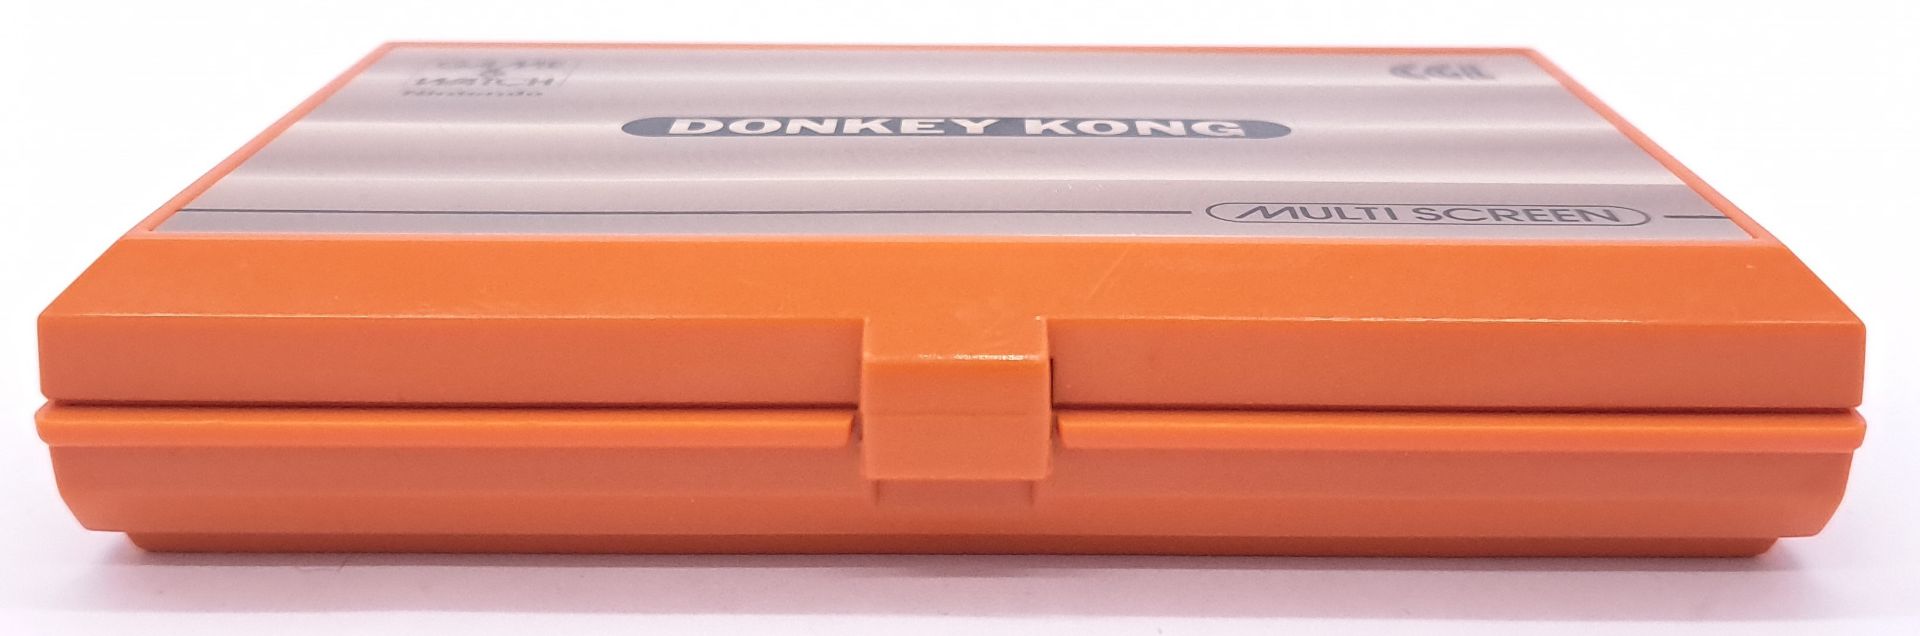 Vintage/Retro Gaming. Nintendo Game & Watch unboxed DK-52 “Donkey Kong” - Bild 8 aus 9